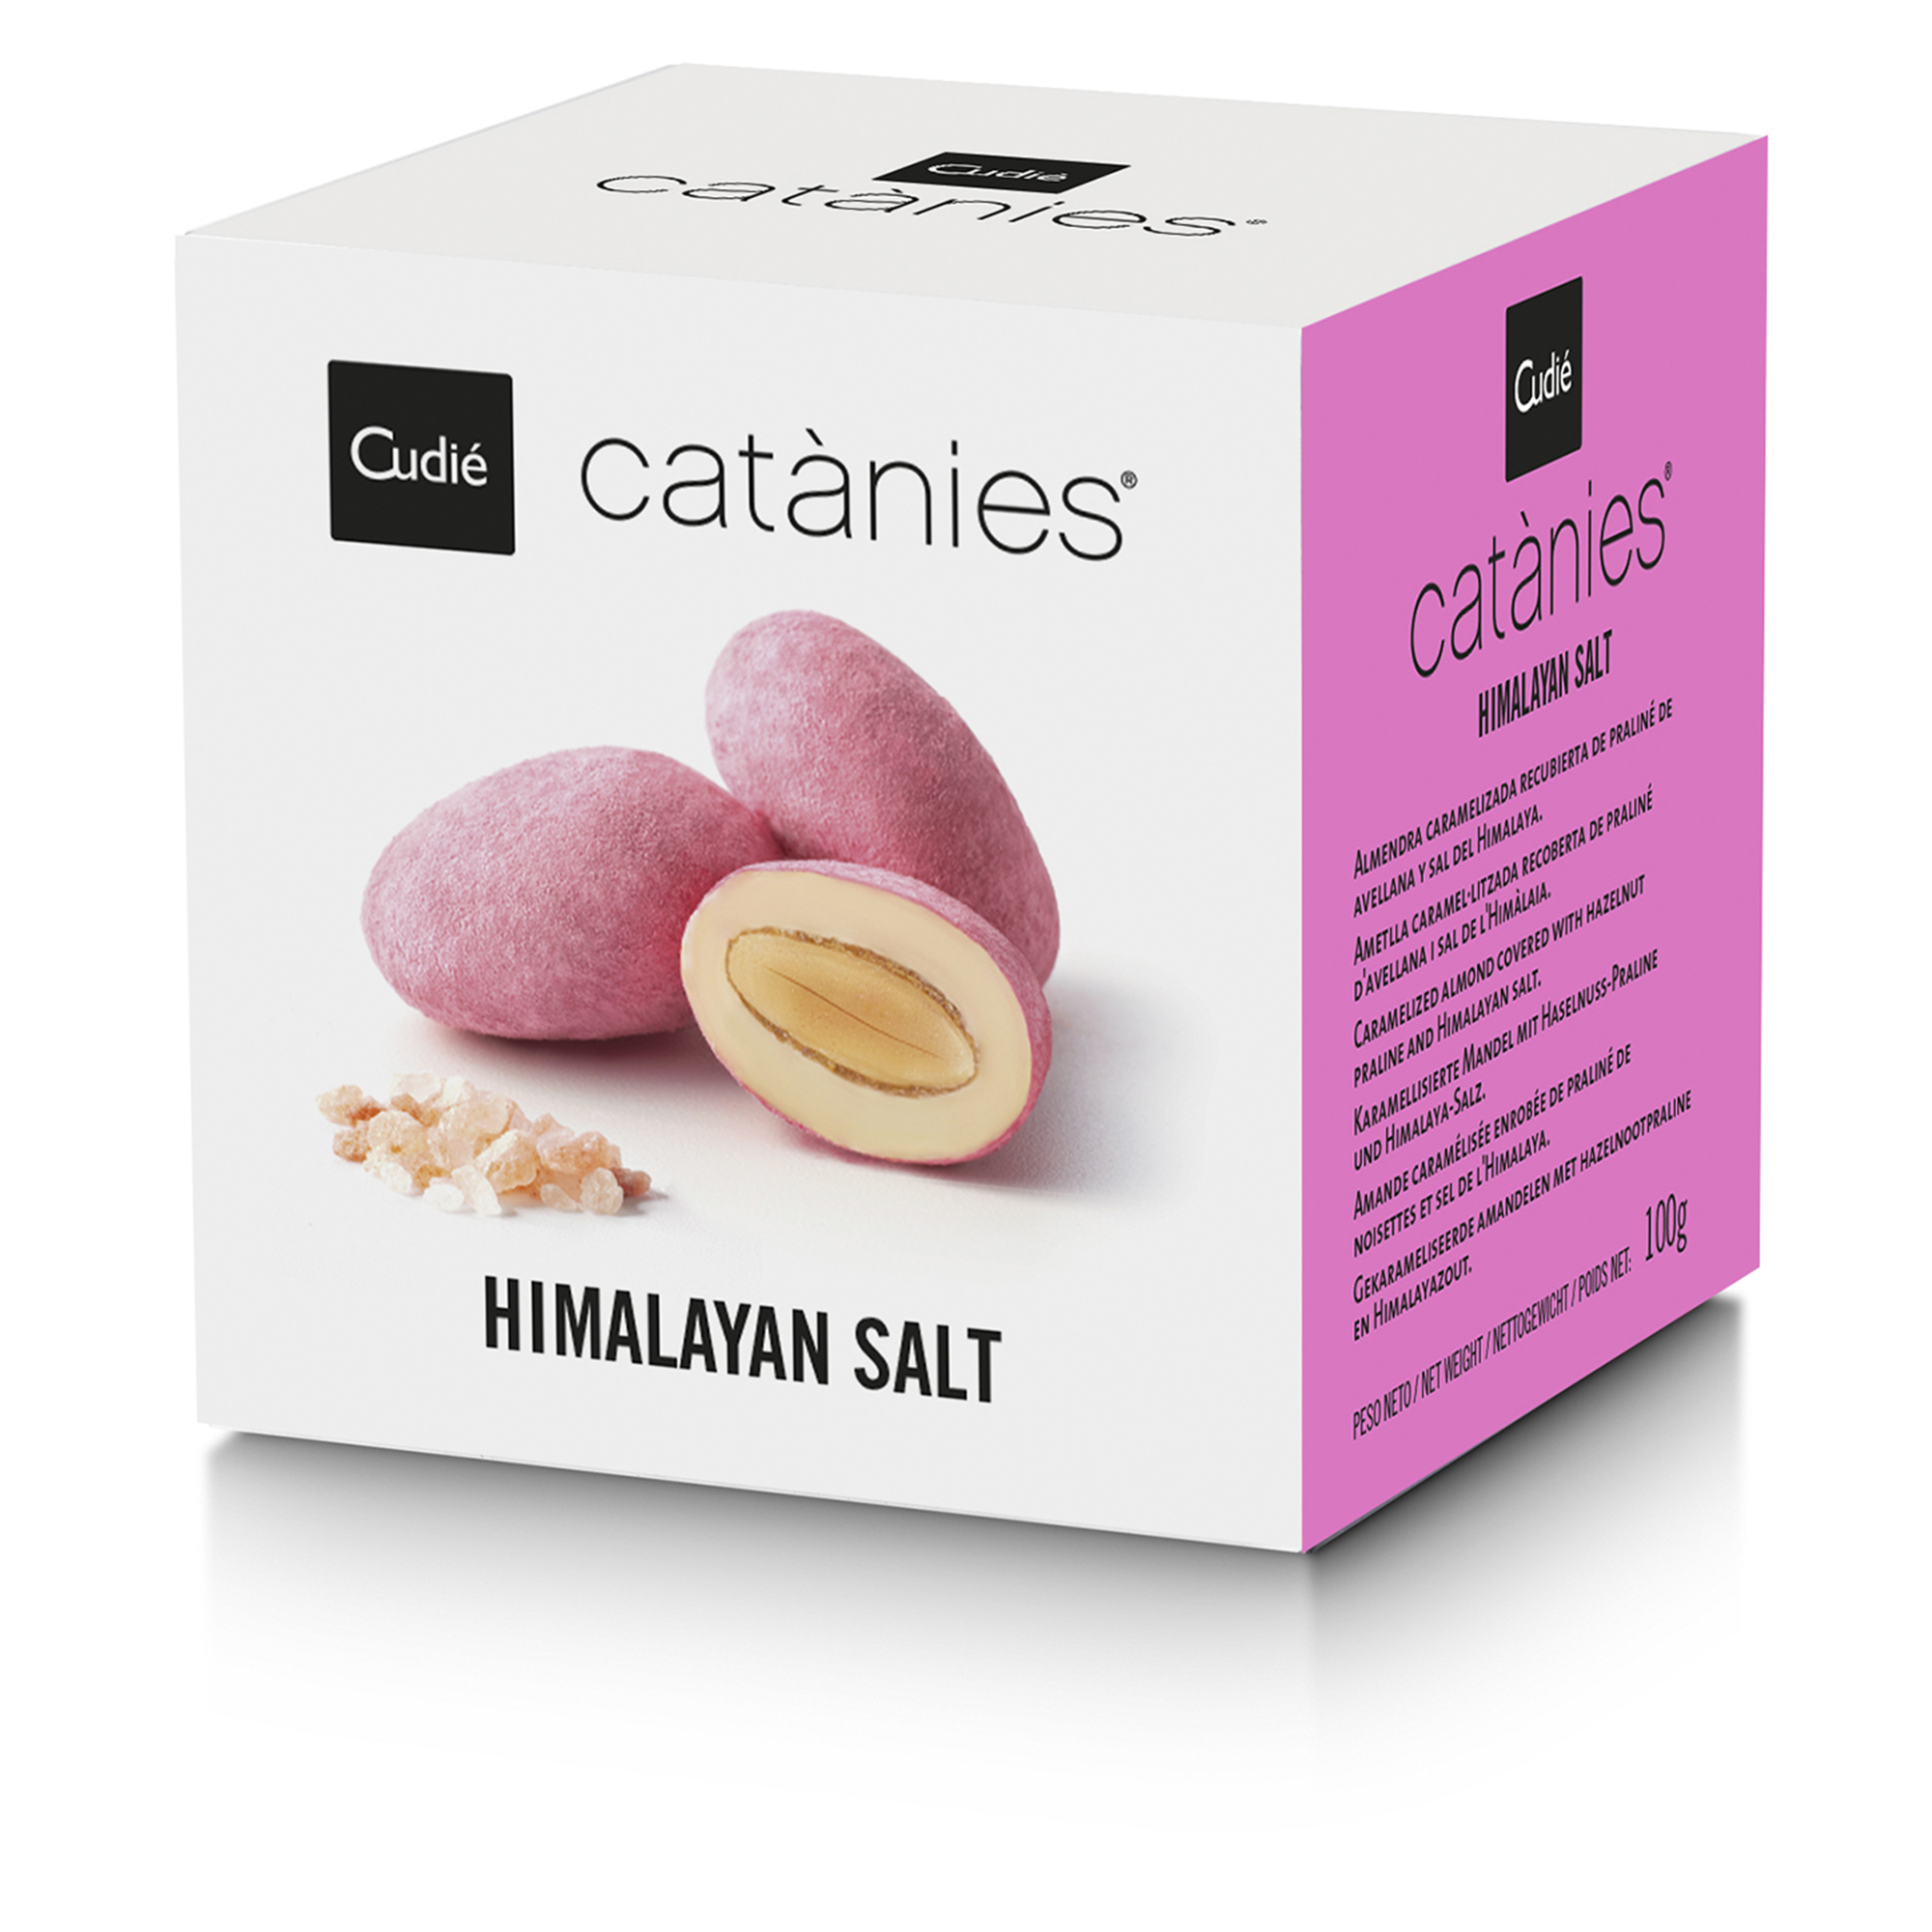 Cudié Catànies® Himalayan Salt